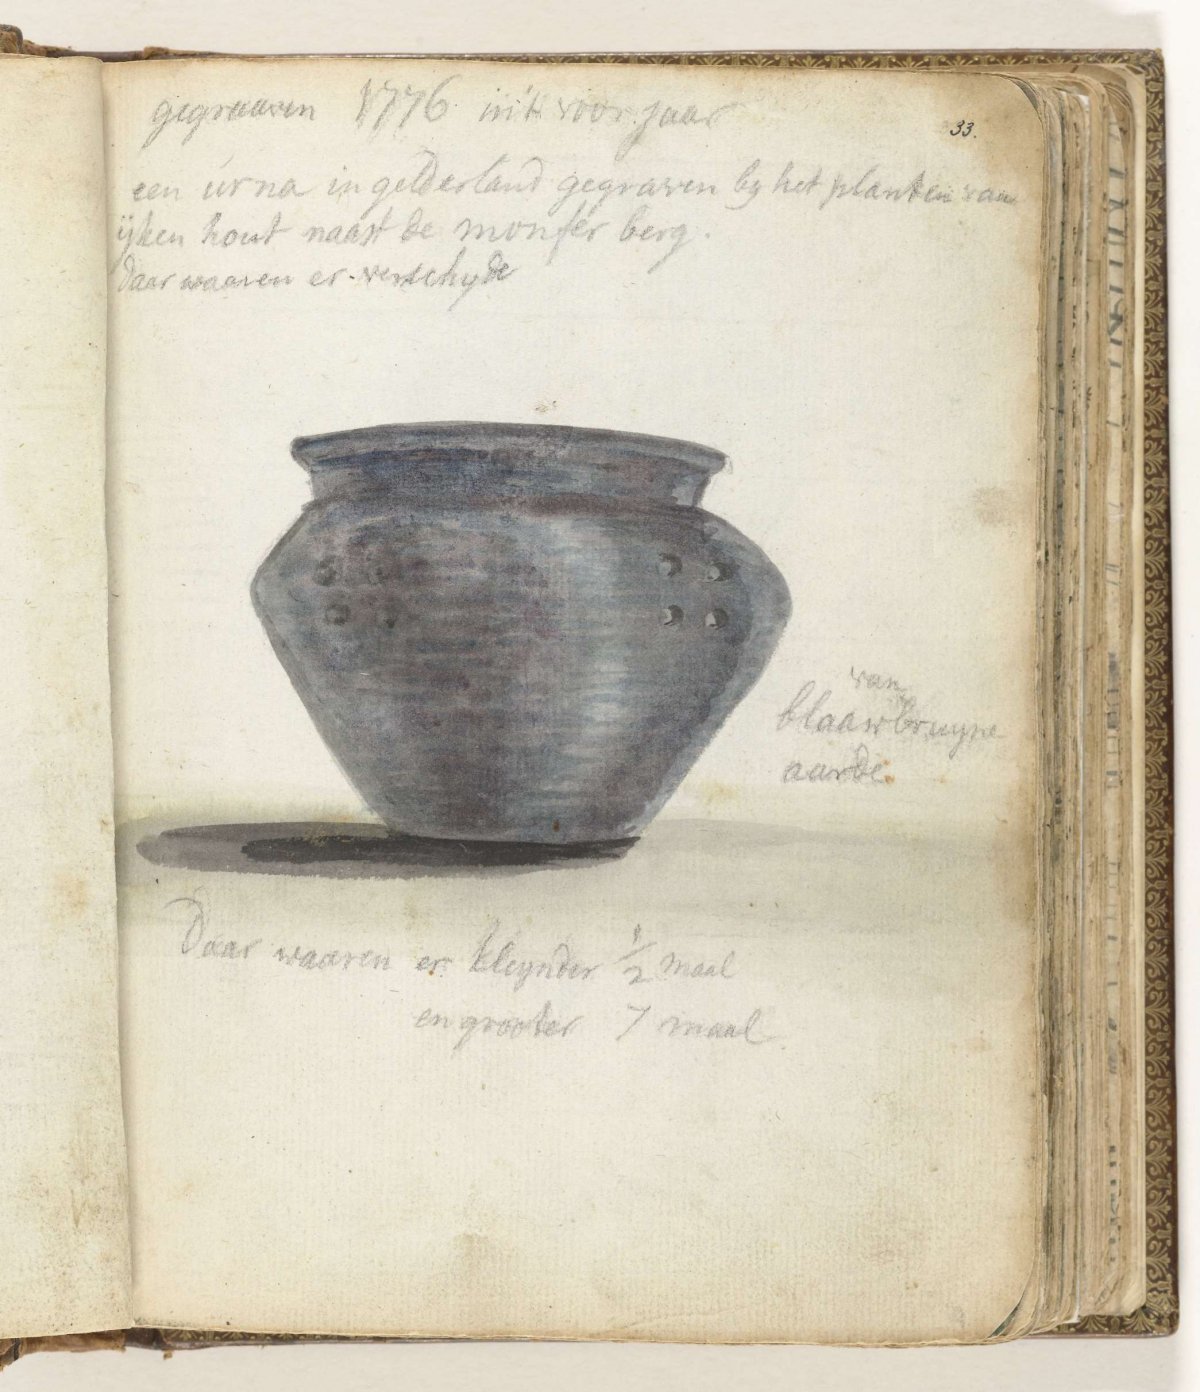 Urn, Jan Brandes, 1776